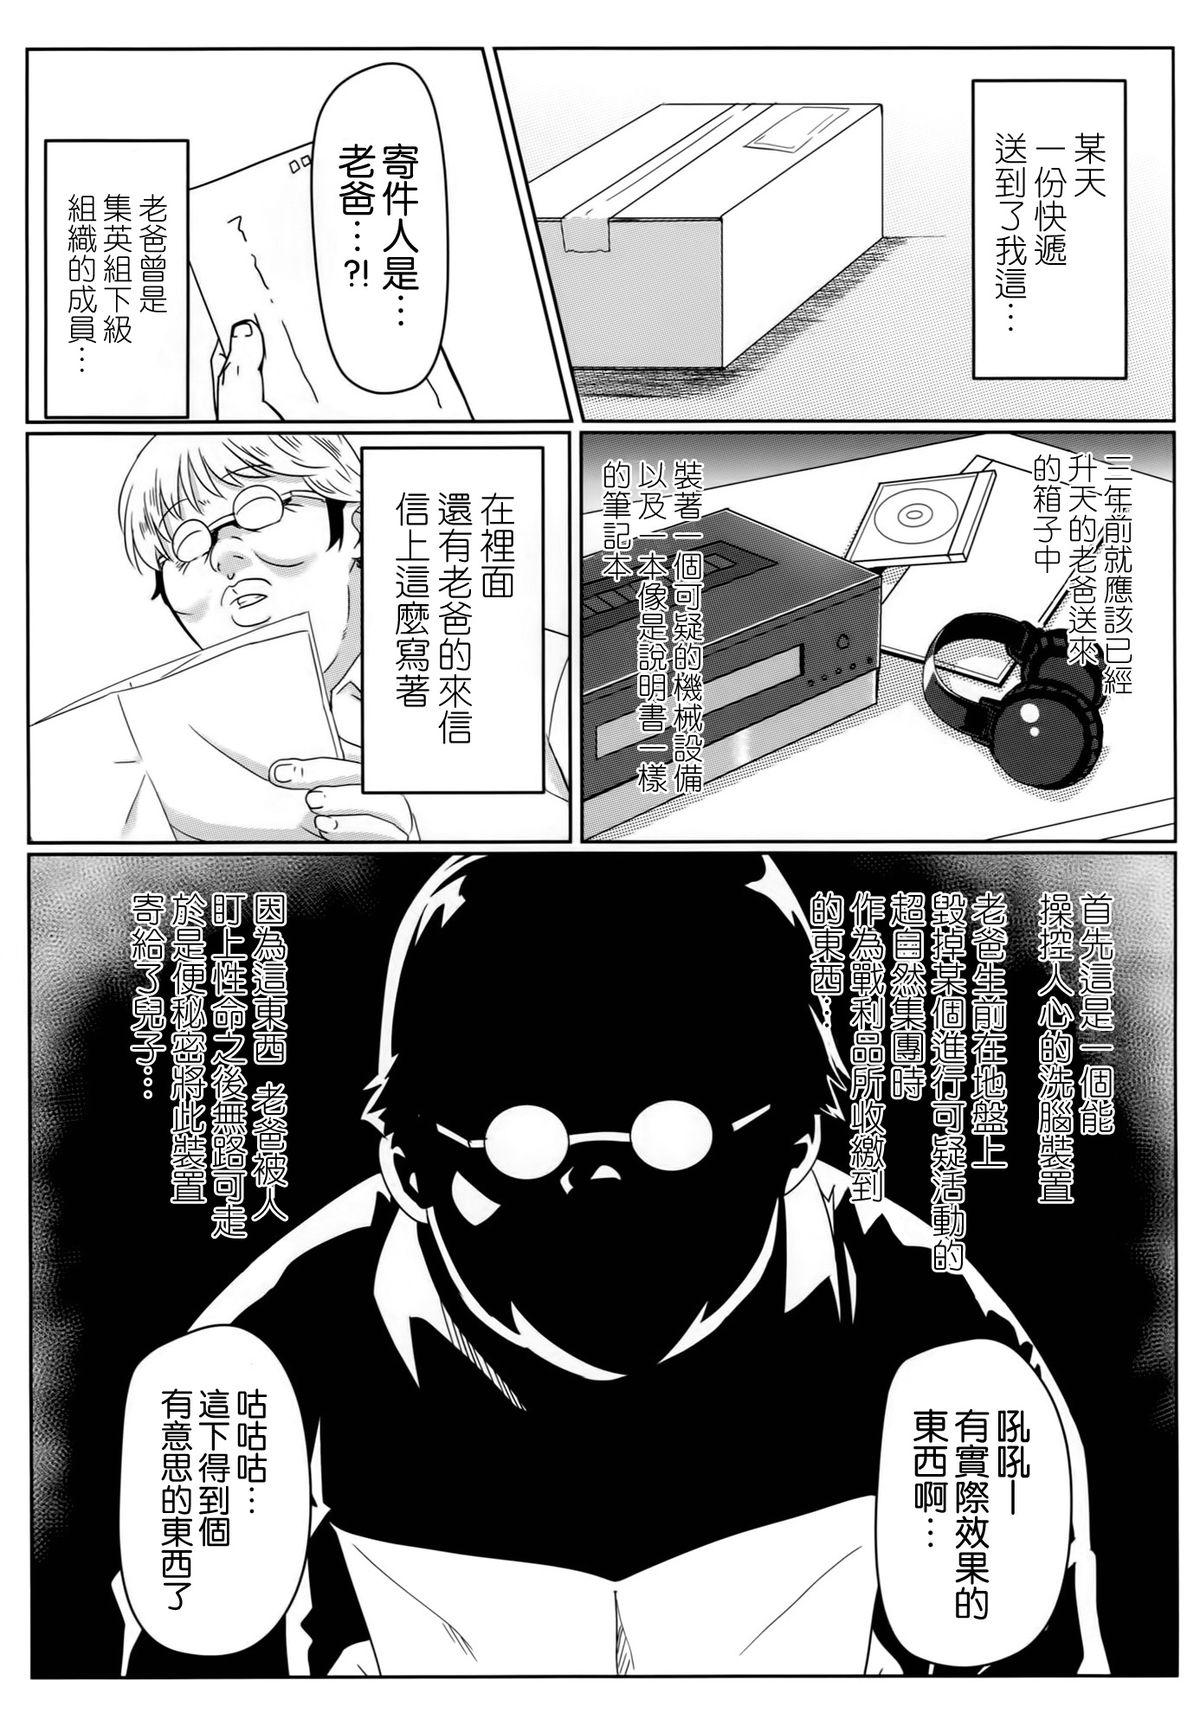 3some Yamikoi - Nisekoi Hard Core Porn - Page 3